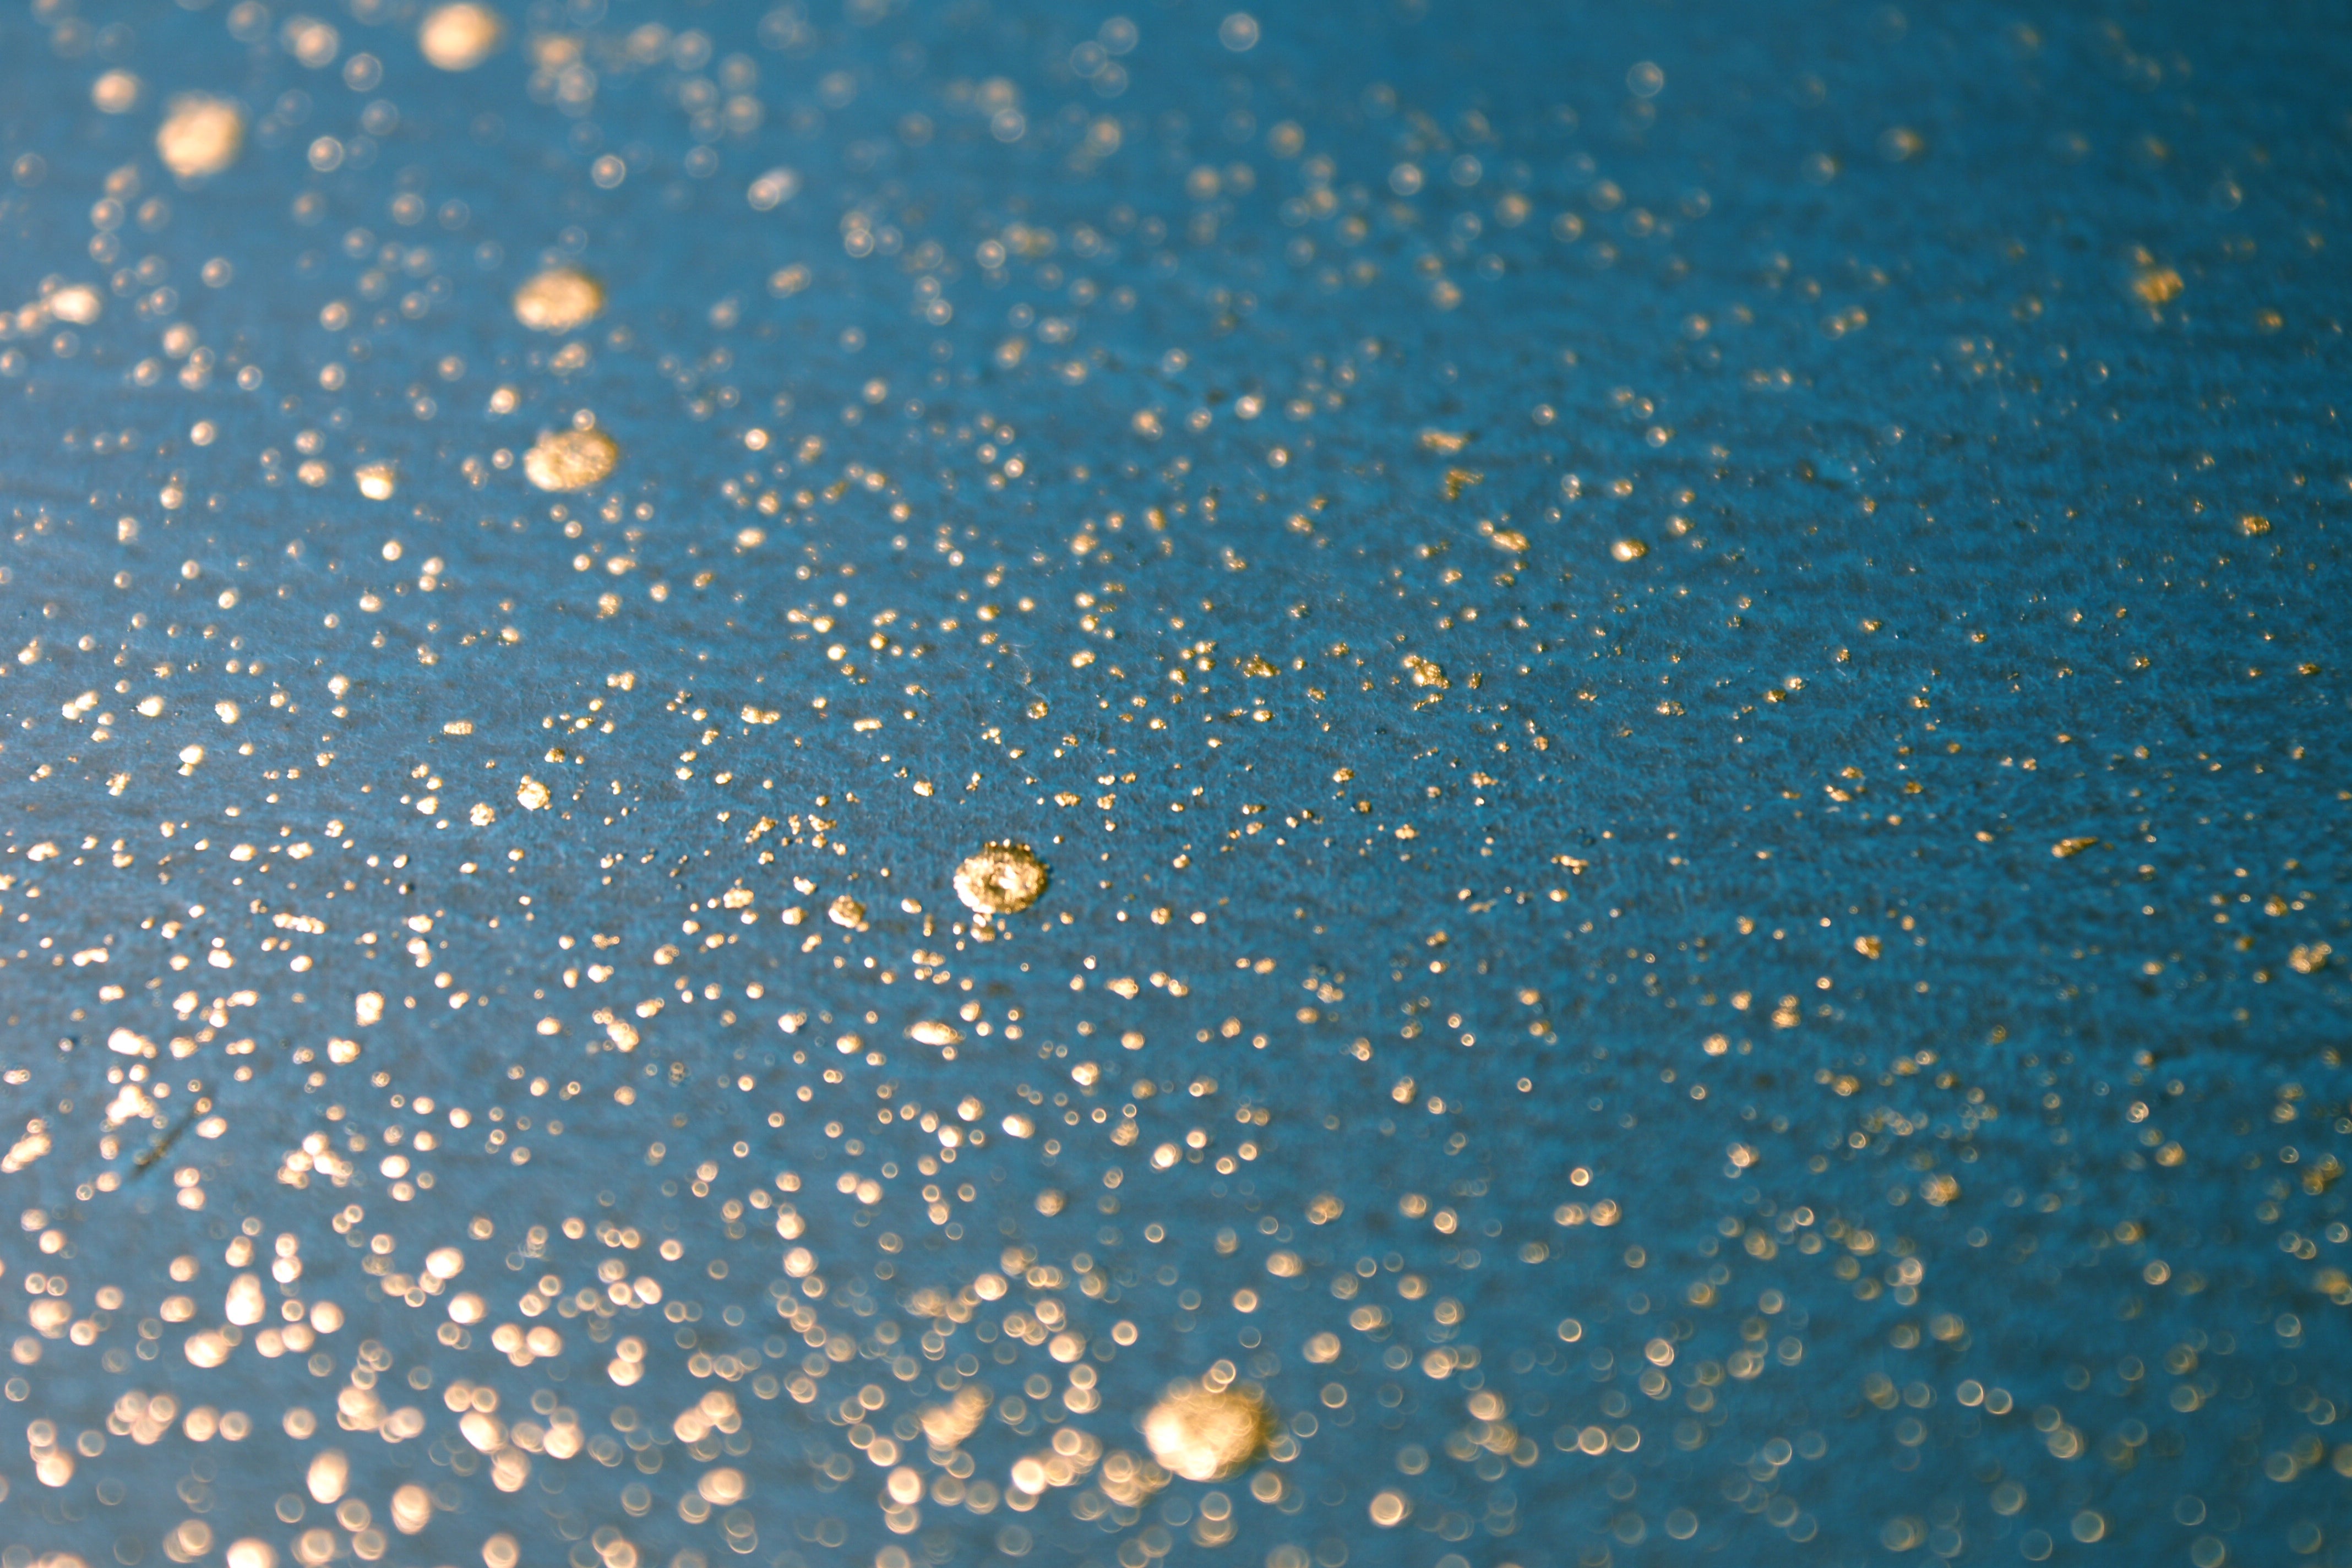 Wide-angle shot of wallpaper in a random splattered pattern in metallic gold on a blue field.